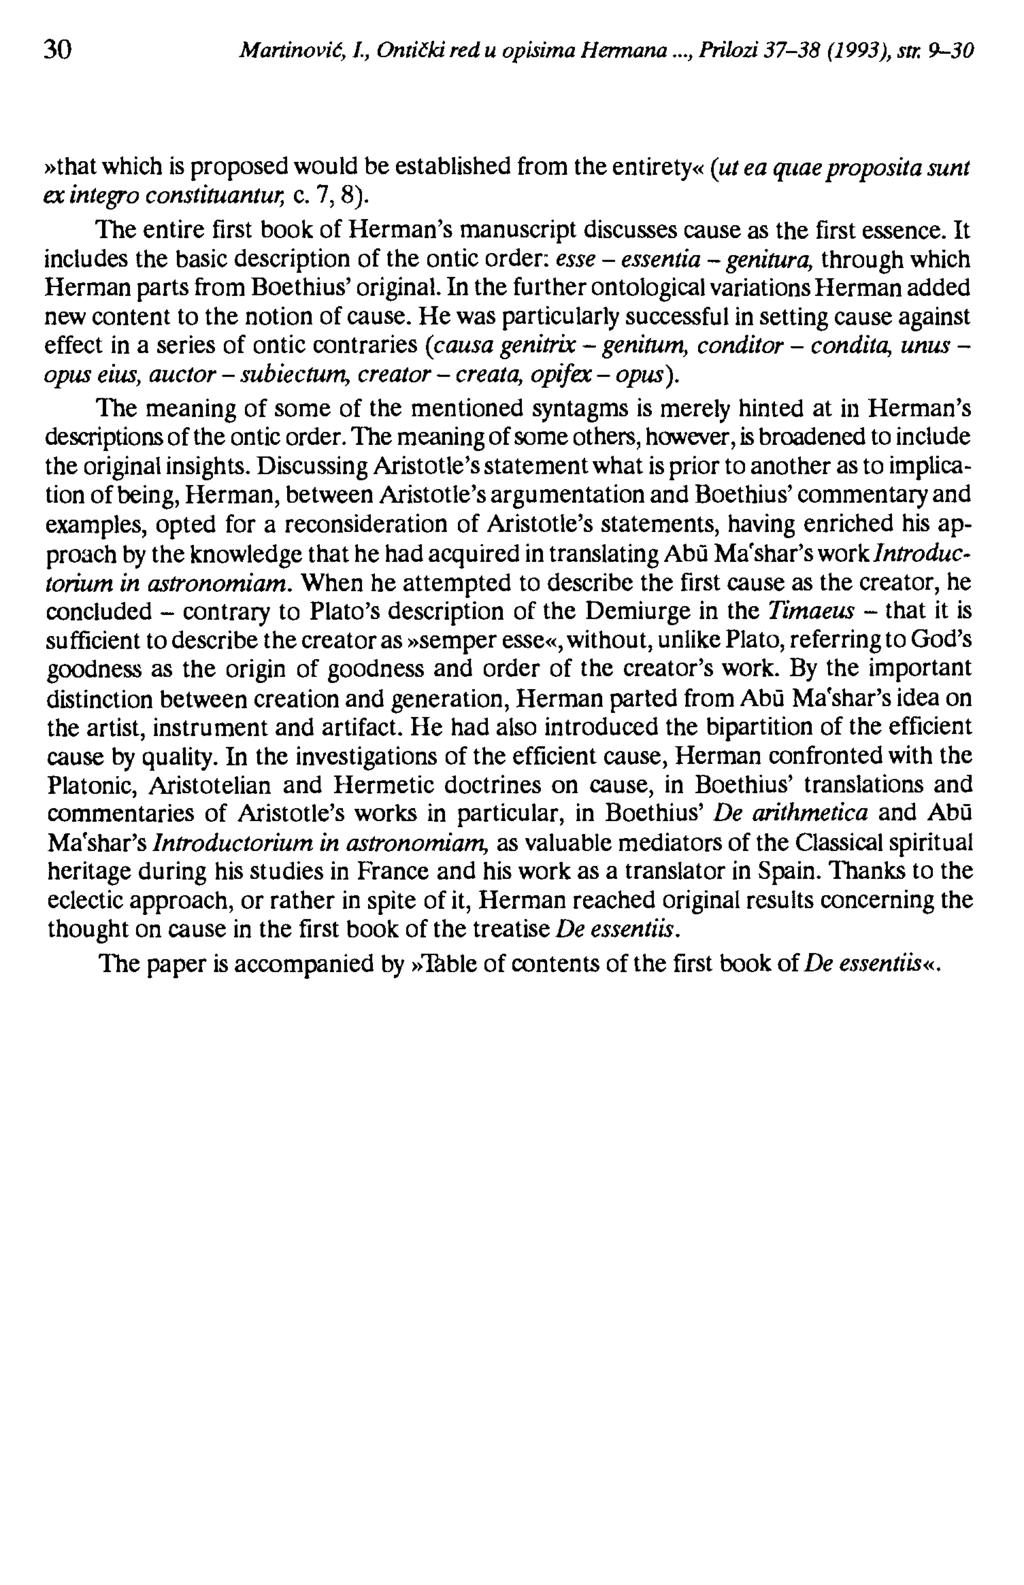 30 Martinović, l., Ontički red u opisima Hennana..., Prilozi 37-38 (1993), str.